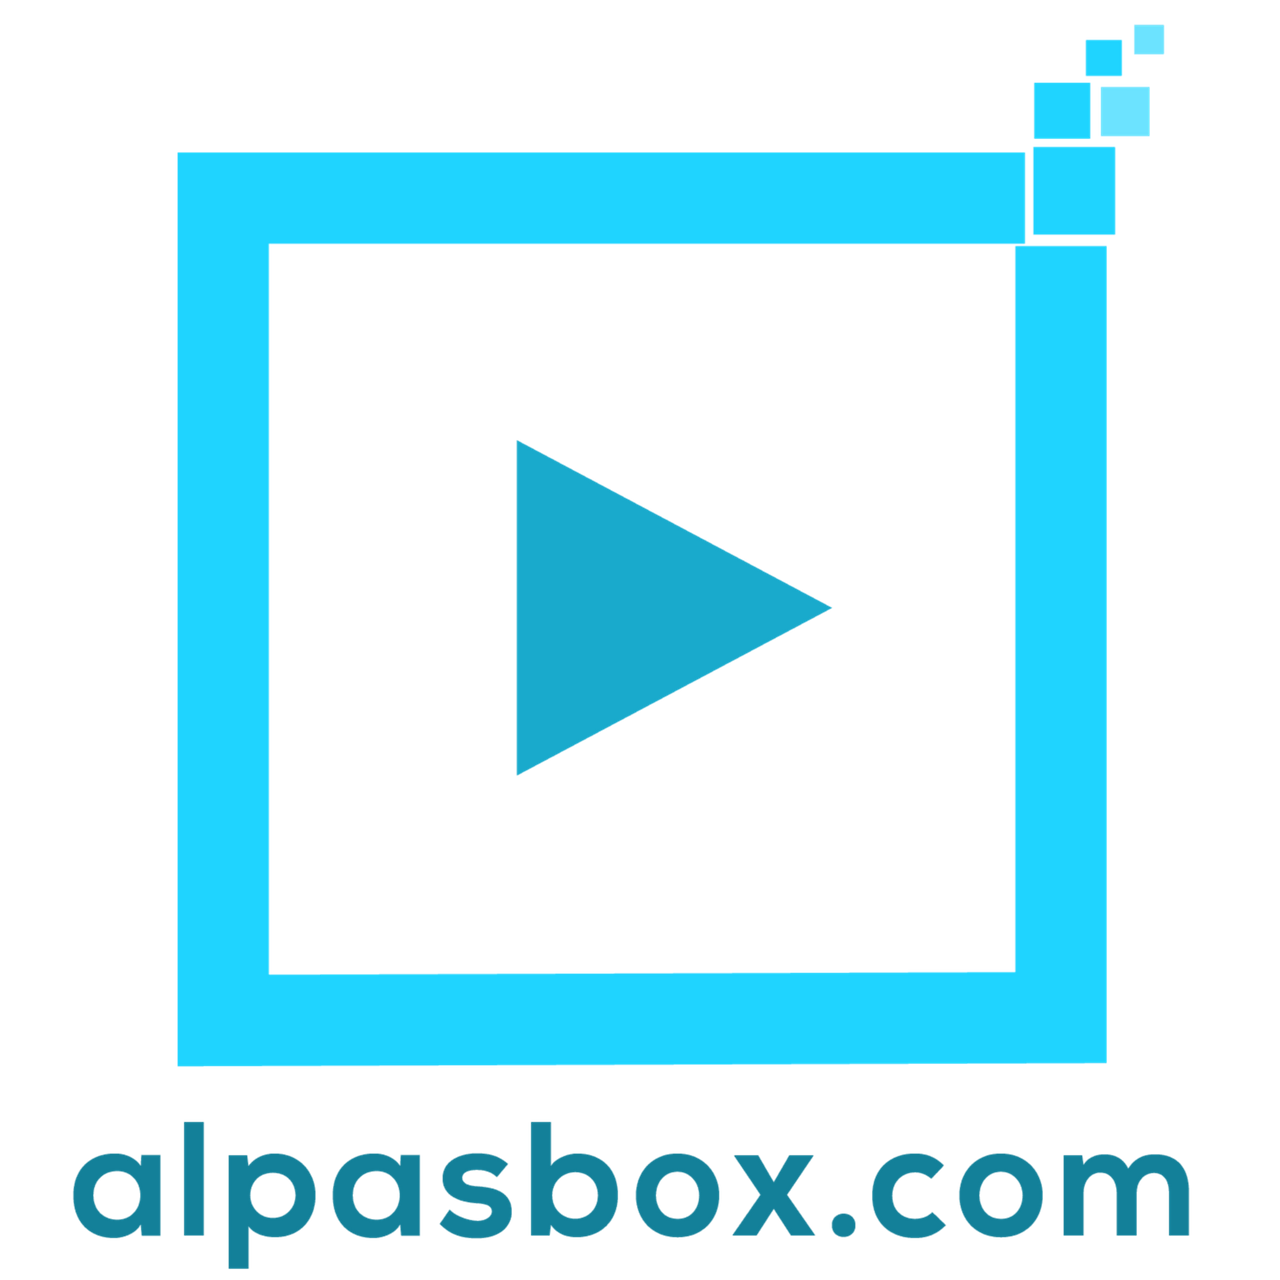 Alpasbox